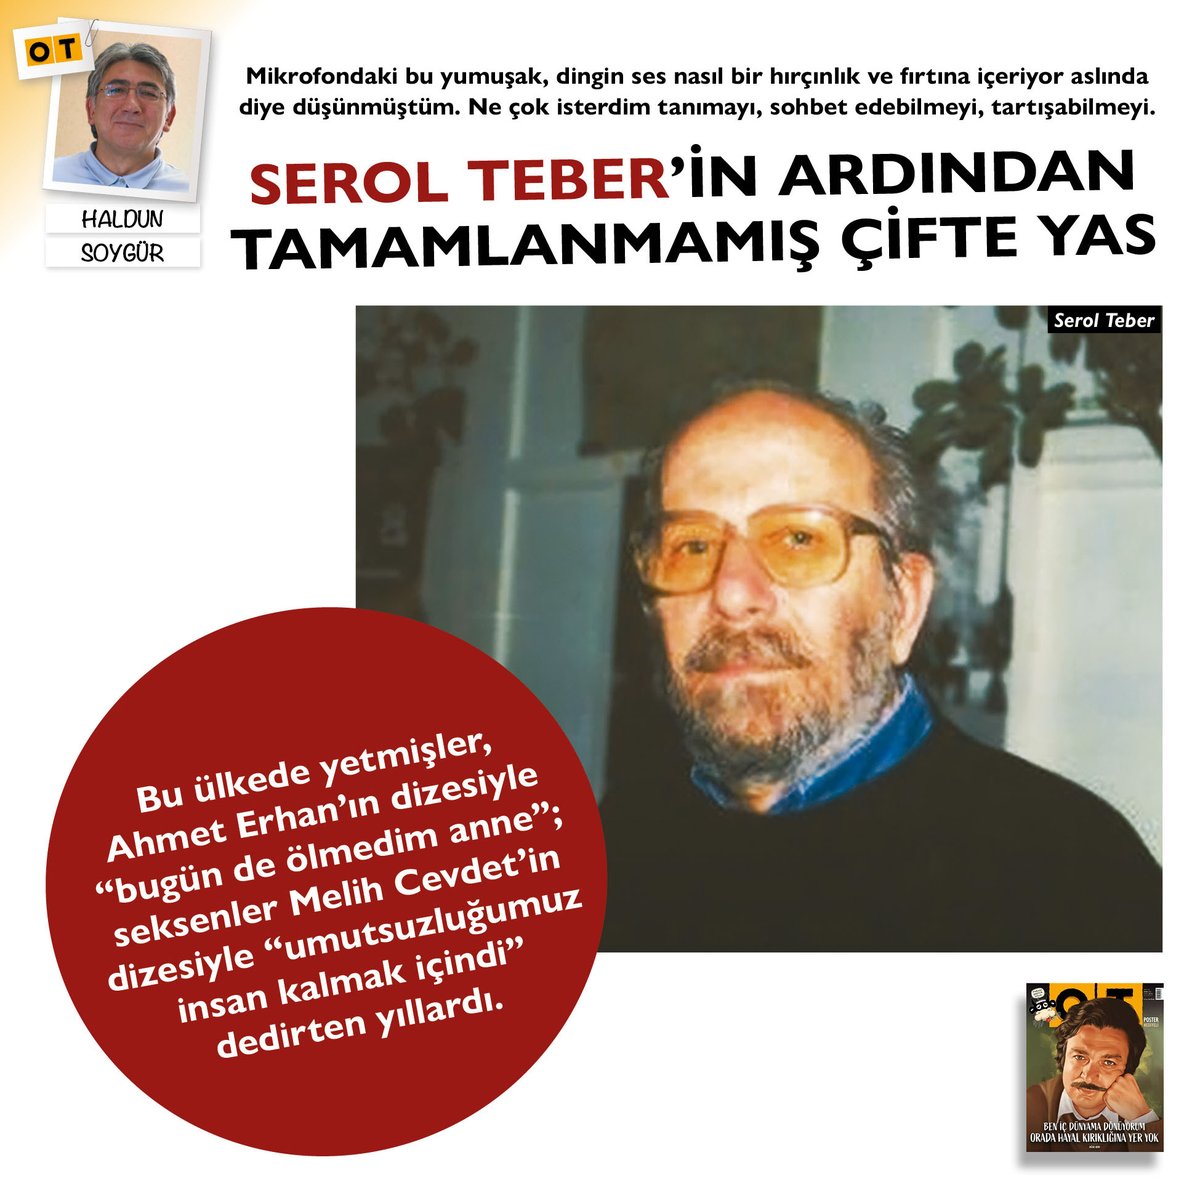 Bu ülkede yetmişler, Ahmet Erhan'ın dizesiyle 'bugün de ölmedim anne'; seksenler Melih Cevdet'in dizesiyle 'umutsuzluğumuz insan kalmak içindi' detirten yıllardı. #HaldunSoygür 🍂 #SerolTeber yazısıyla #Ekim sayımızda 📝 #OTdergi